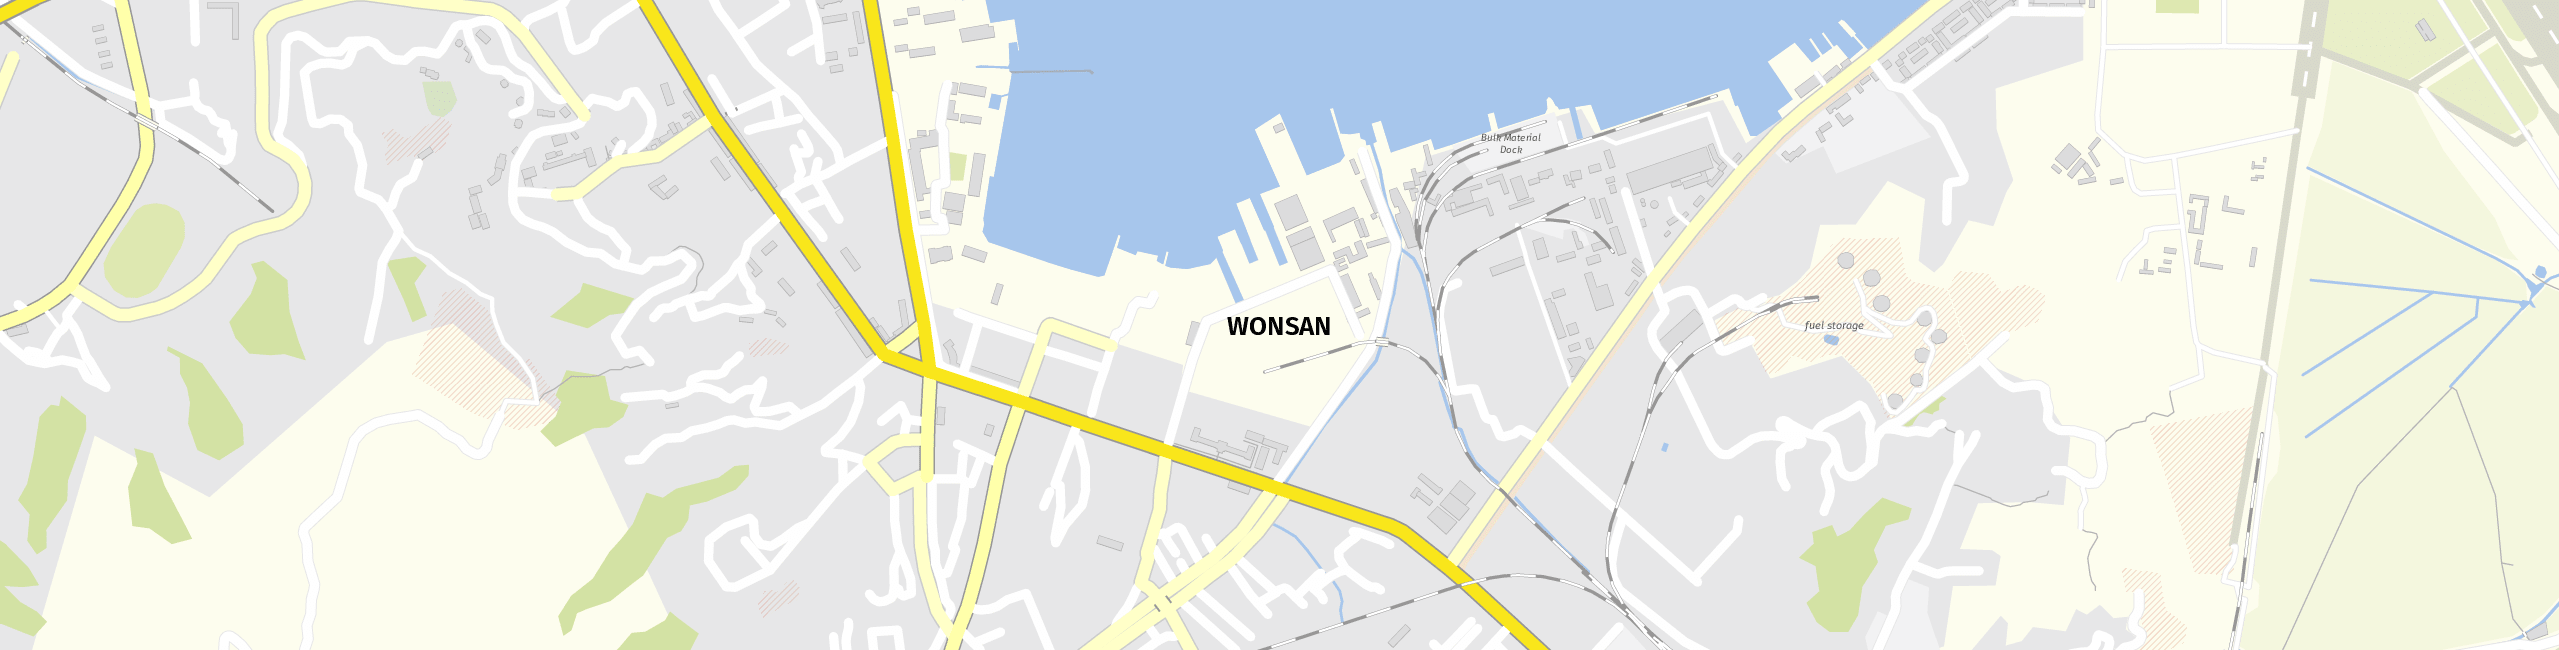 Stadtplan Wŏnsan zum Downloaden.